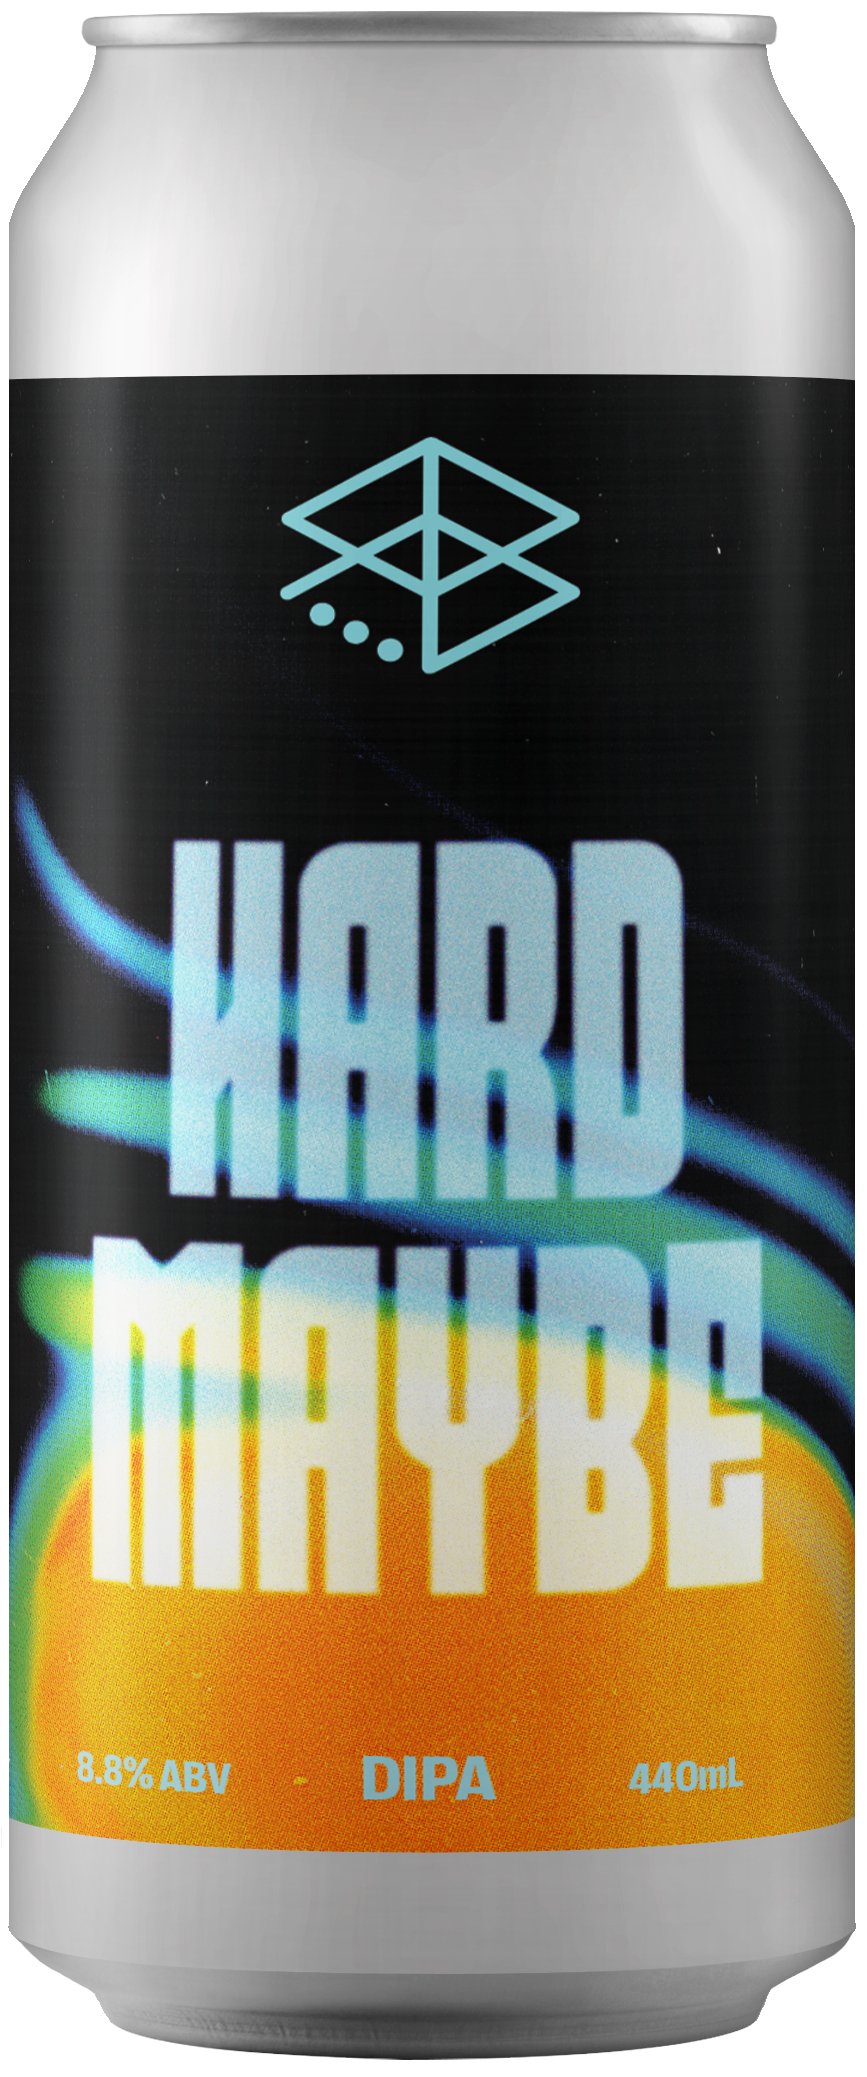 Hard Maybe - DIPA